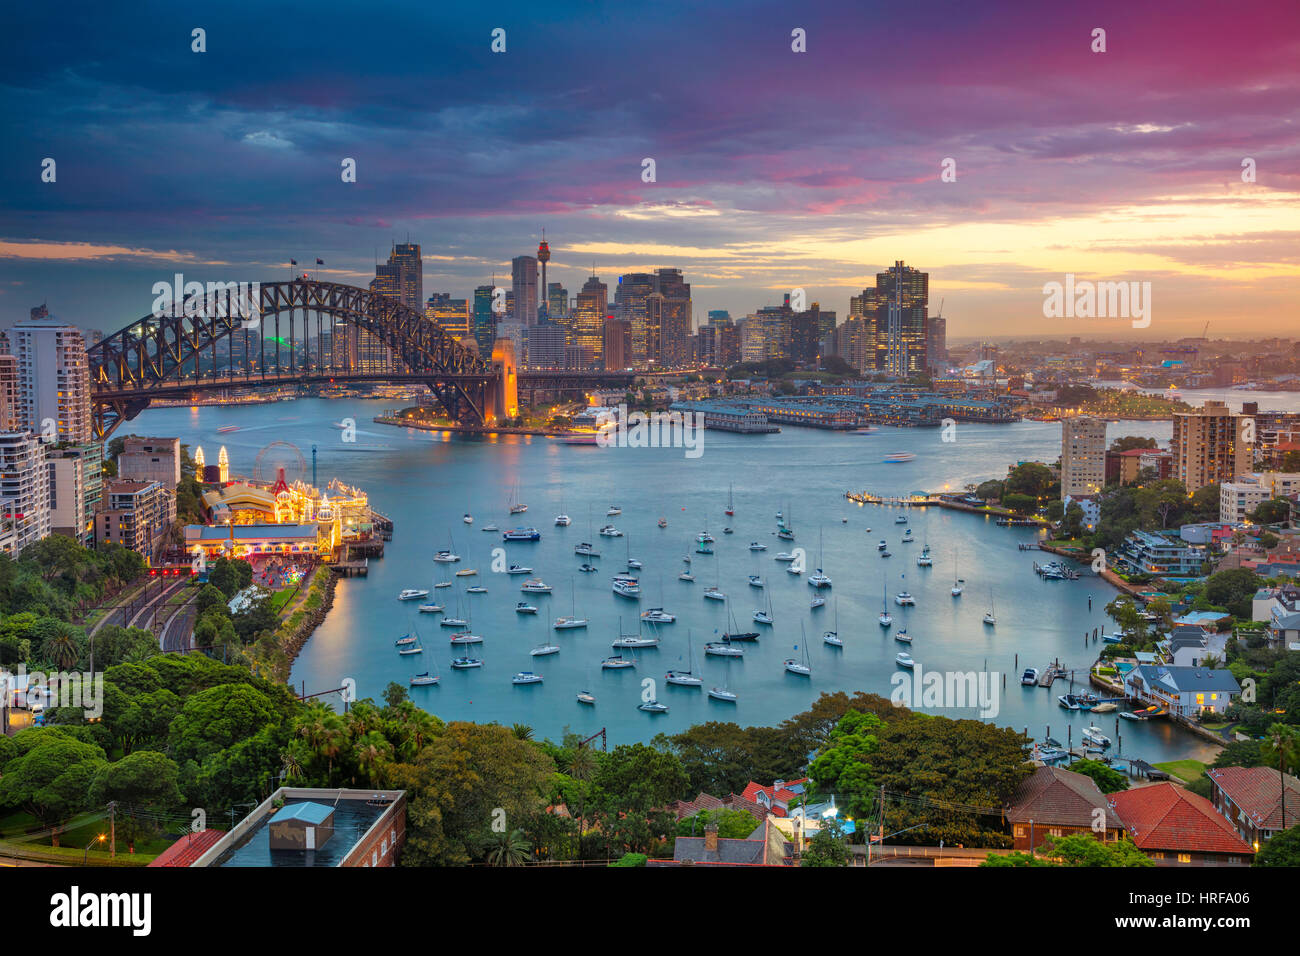 Sydney. Imagen del paisaje urbano de Sydney, Australia, con el Harbour Bridge y horizonte de Sydney durante la puesta de sol. Foto de stock